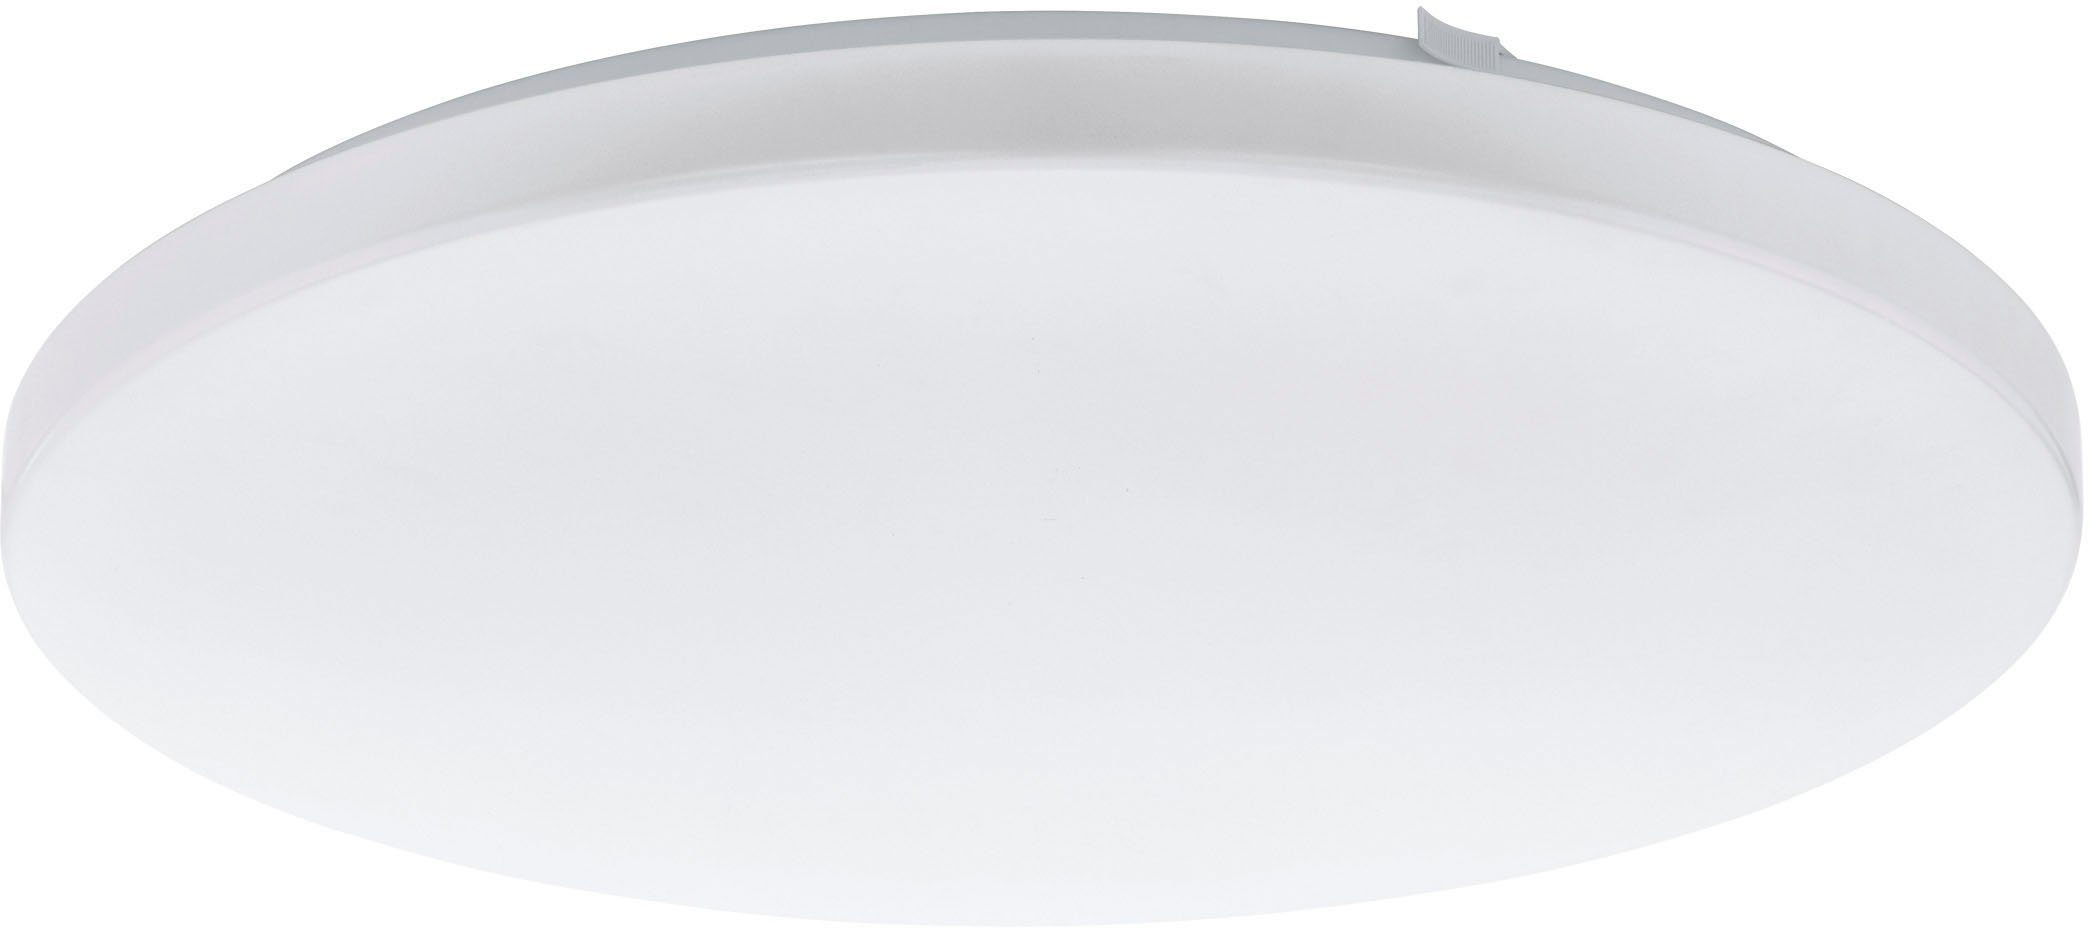 EGLO Deckenleuchte FRANIA, LED fest integriert, Warmweiß, Deckenleuchte, Deckenlampe, Wohnzimmerlampe, Farbe: Weiß, Ø: 43 cm